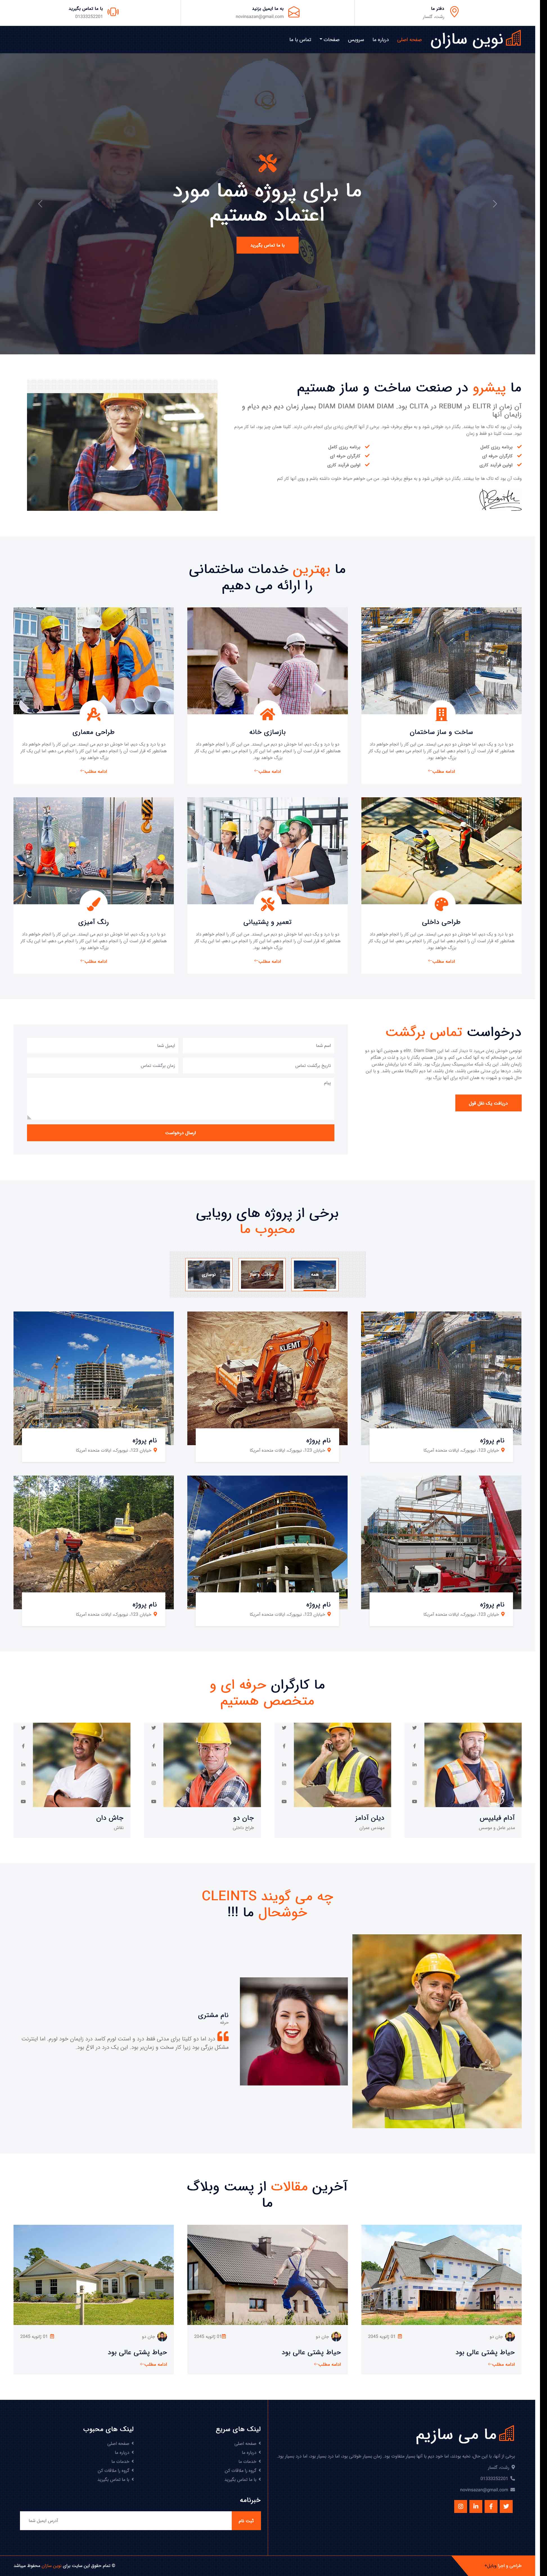 وب سایت آماده ساخت و ساز ساختمان، مناسب برای شرکت یا افرادی که کار مرتبط با صنعت ساختمان دارند